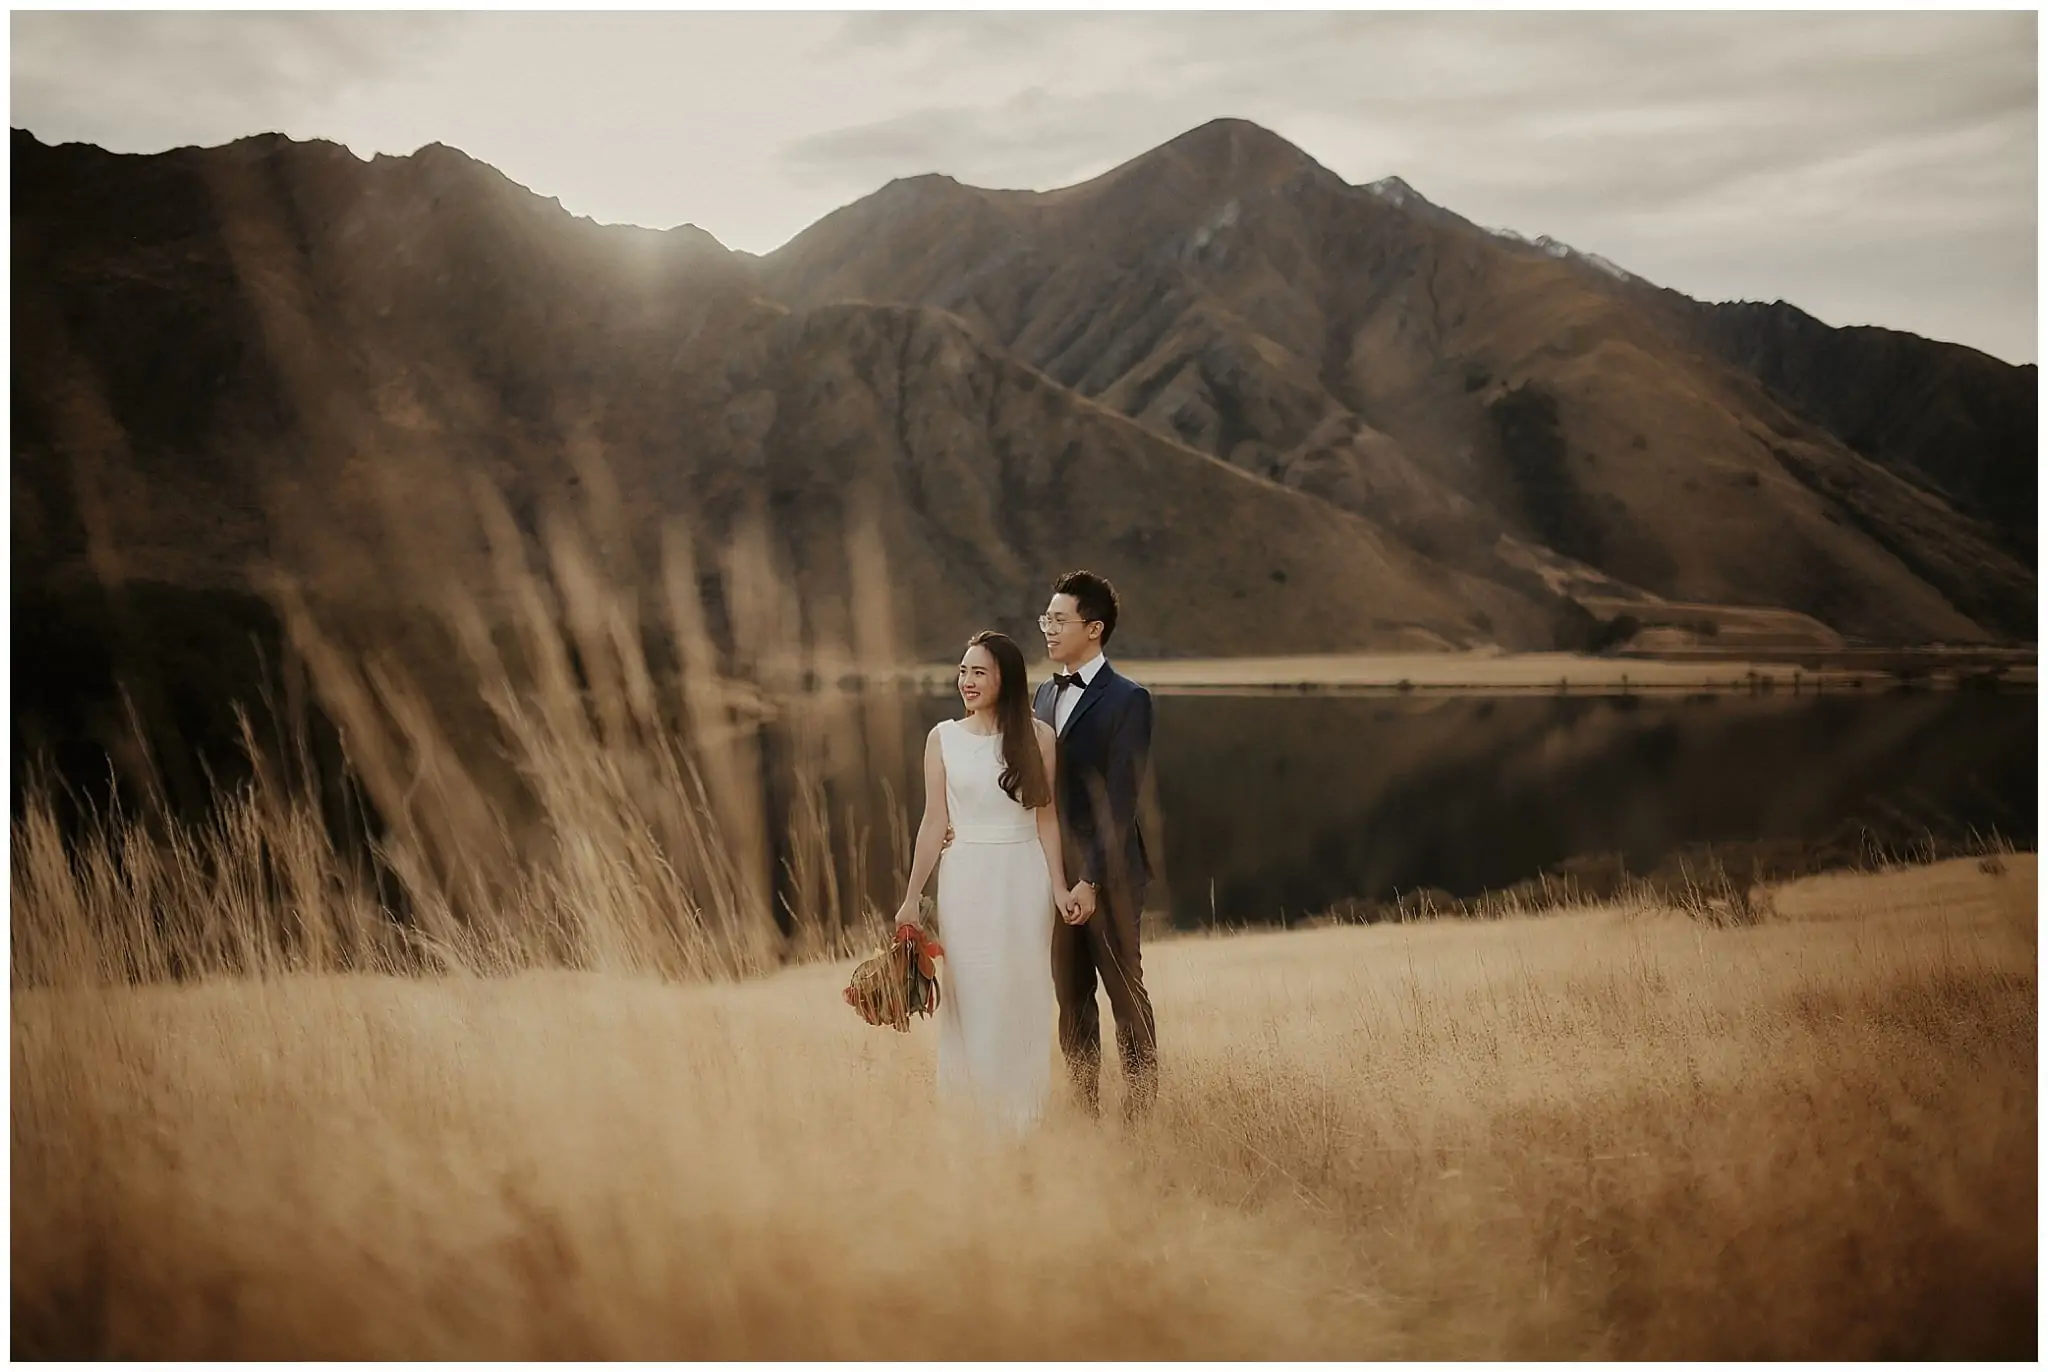 Yuntze & Chan's Queenstown NZ Pre-Wedding Shoot